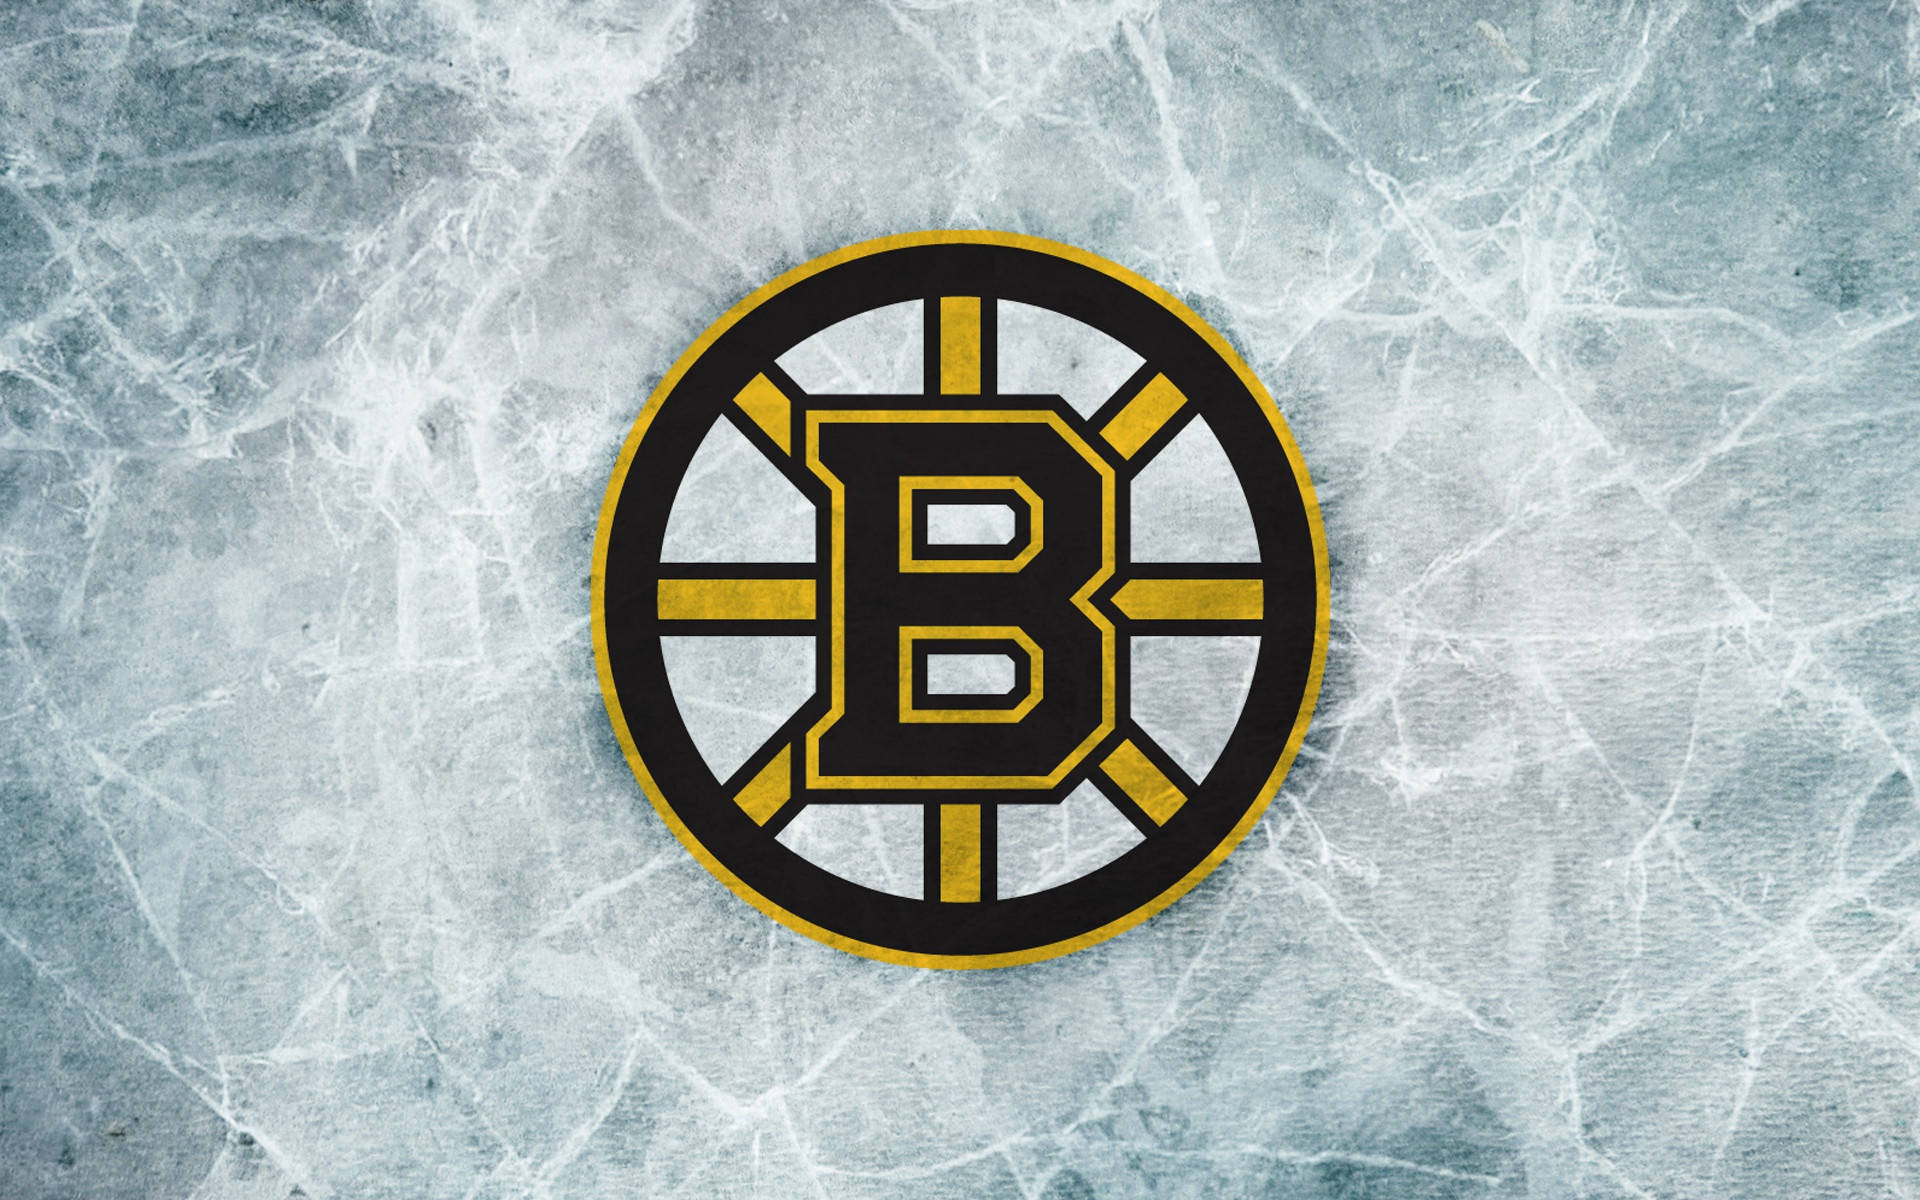 Boston Bruins Cracked Stone Wallpaper